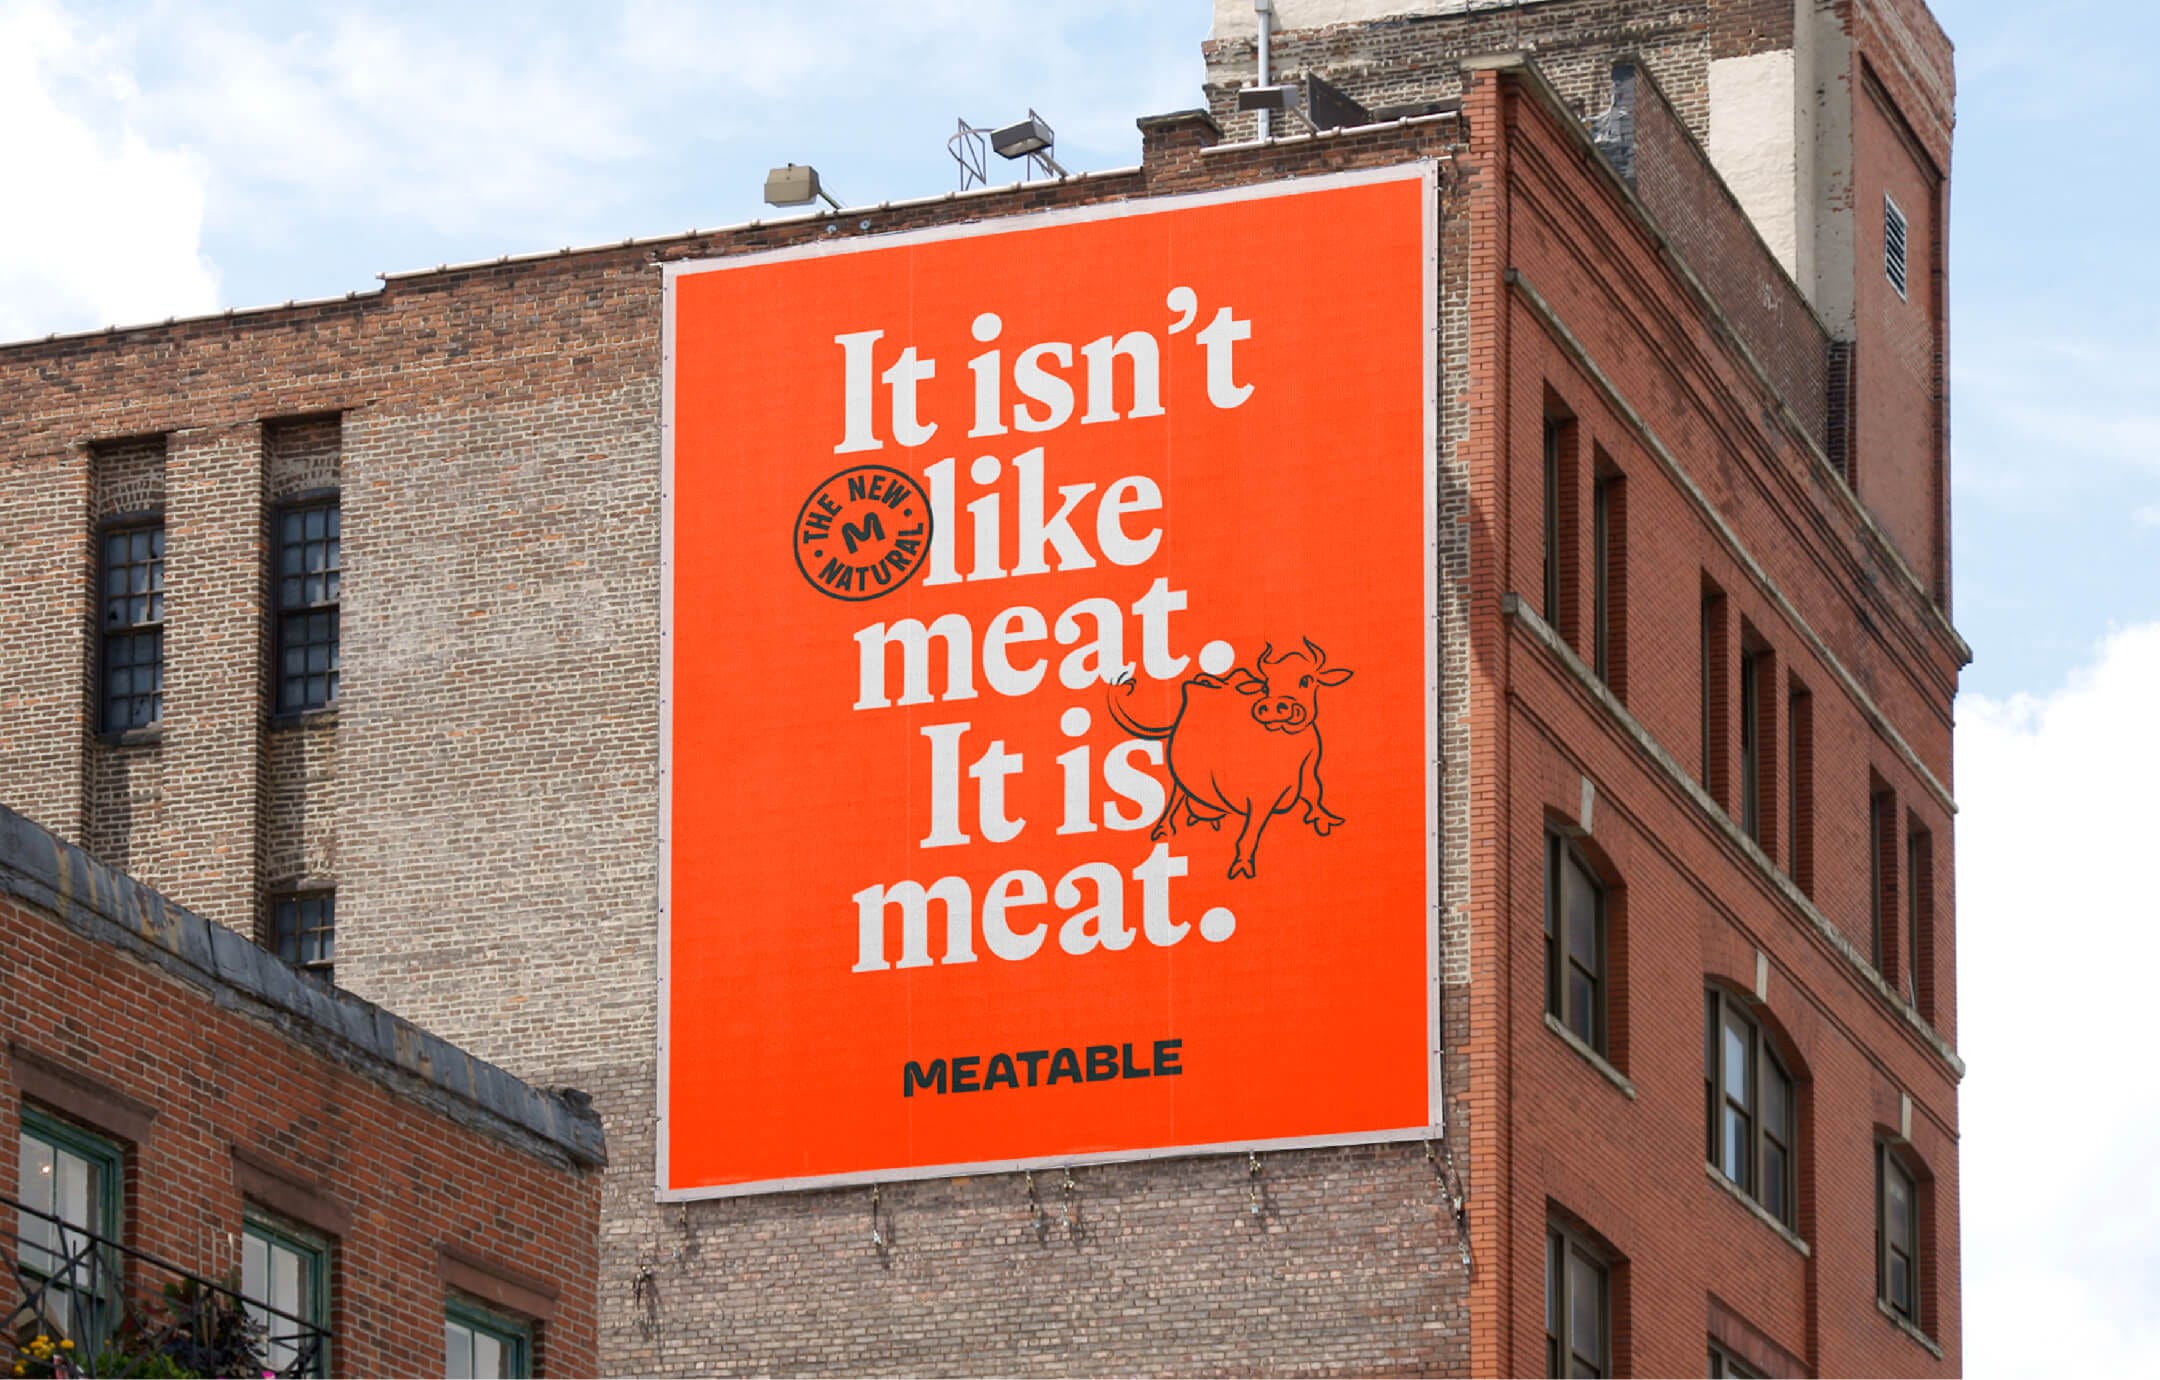 Billboard on the side of a building that reads "It isn't like meat. It is meat."